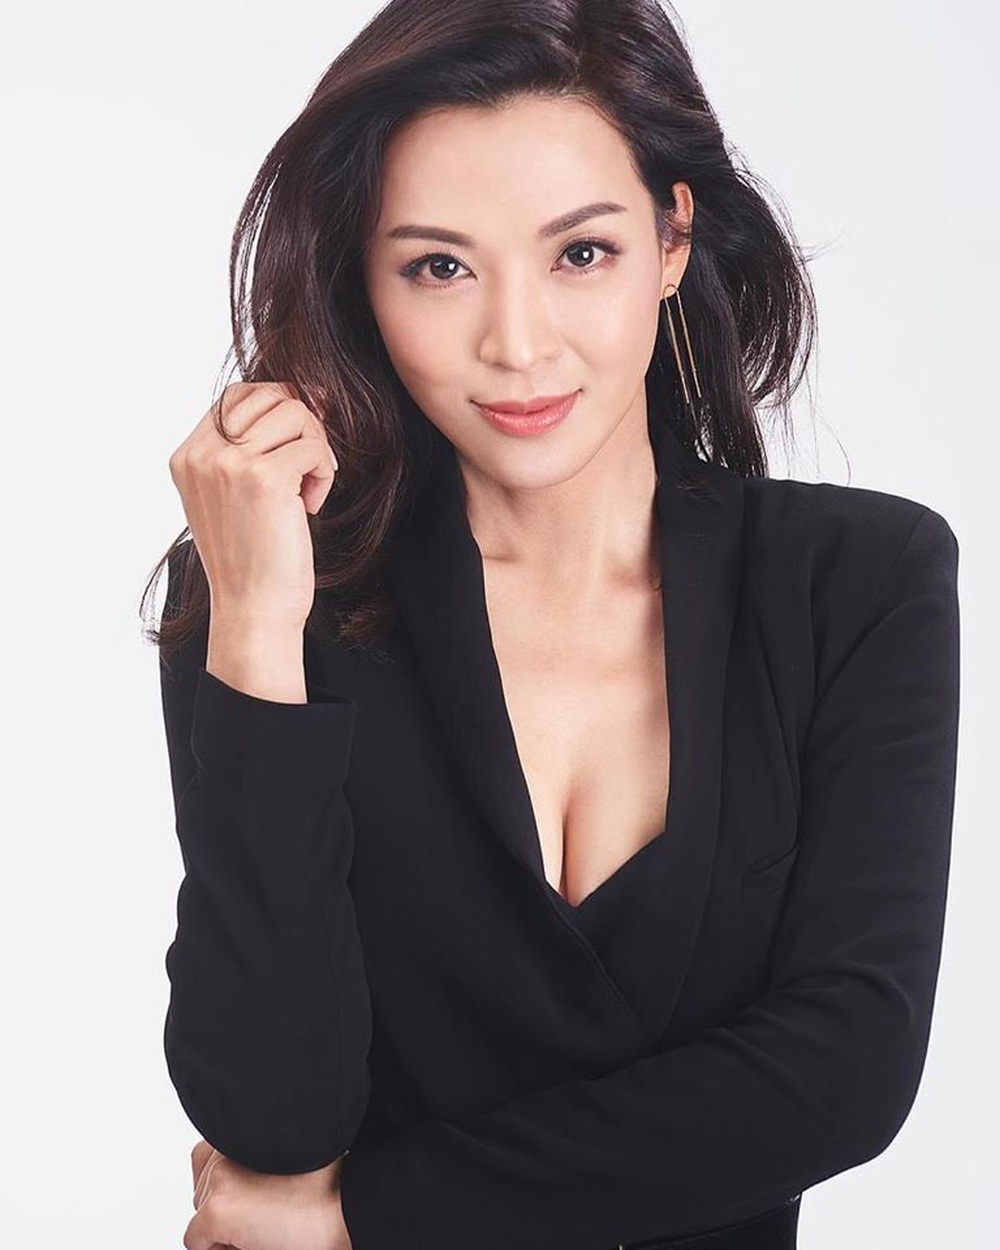 Hoa hậu châu Á nổi danh TVB ly dị vì hôn nhân thiếu lửa, tuổi U50 vẫn sở hữu nhan sắc nóng bỏng  - Ảnh 8.